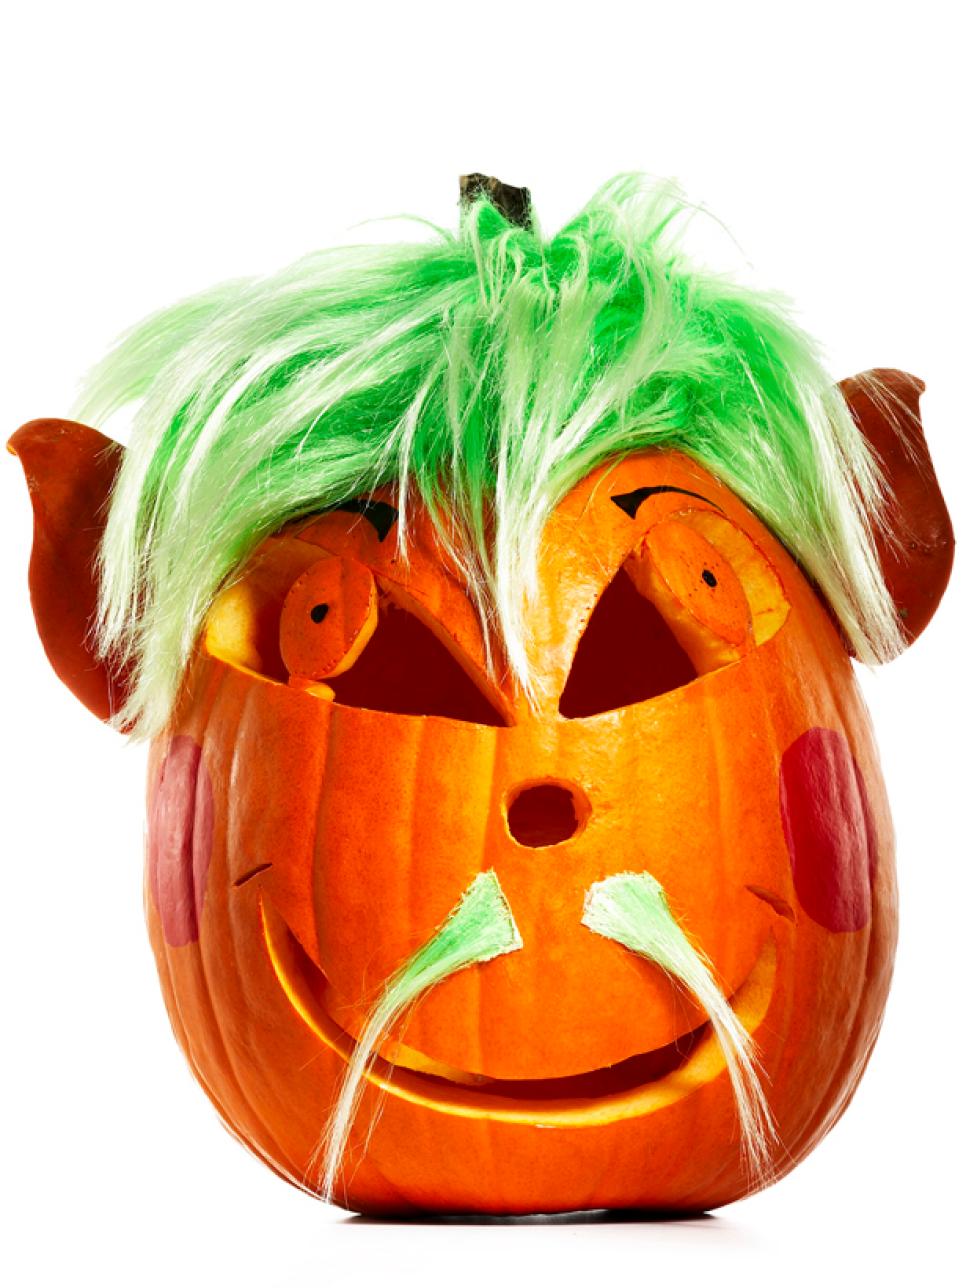 Image result for pumpkin